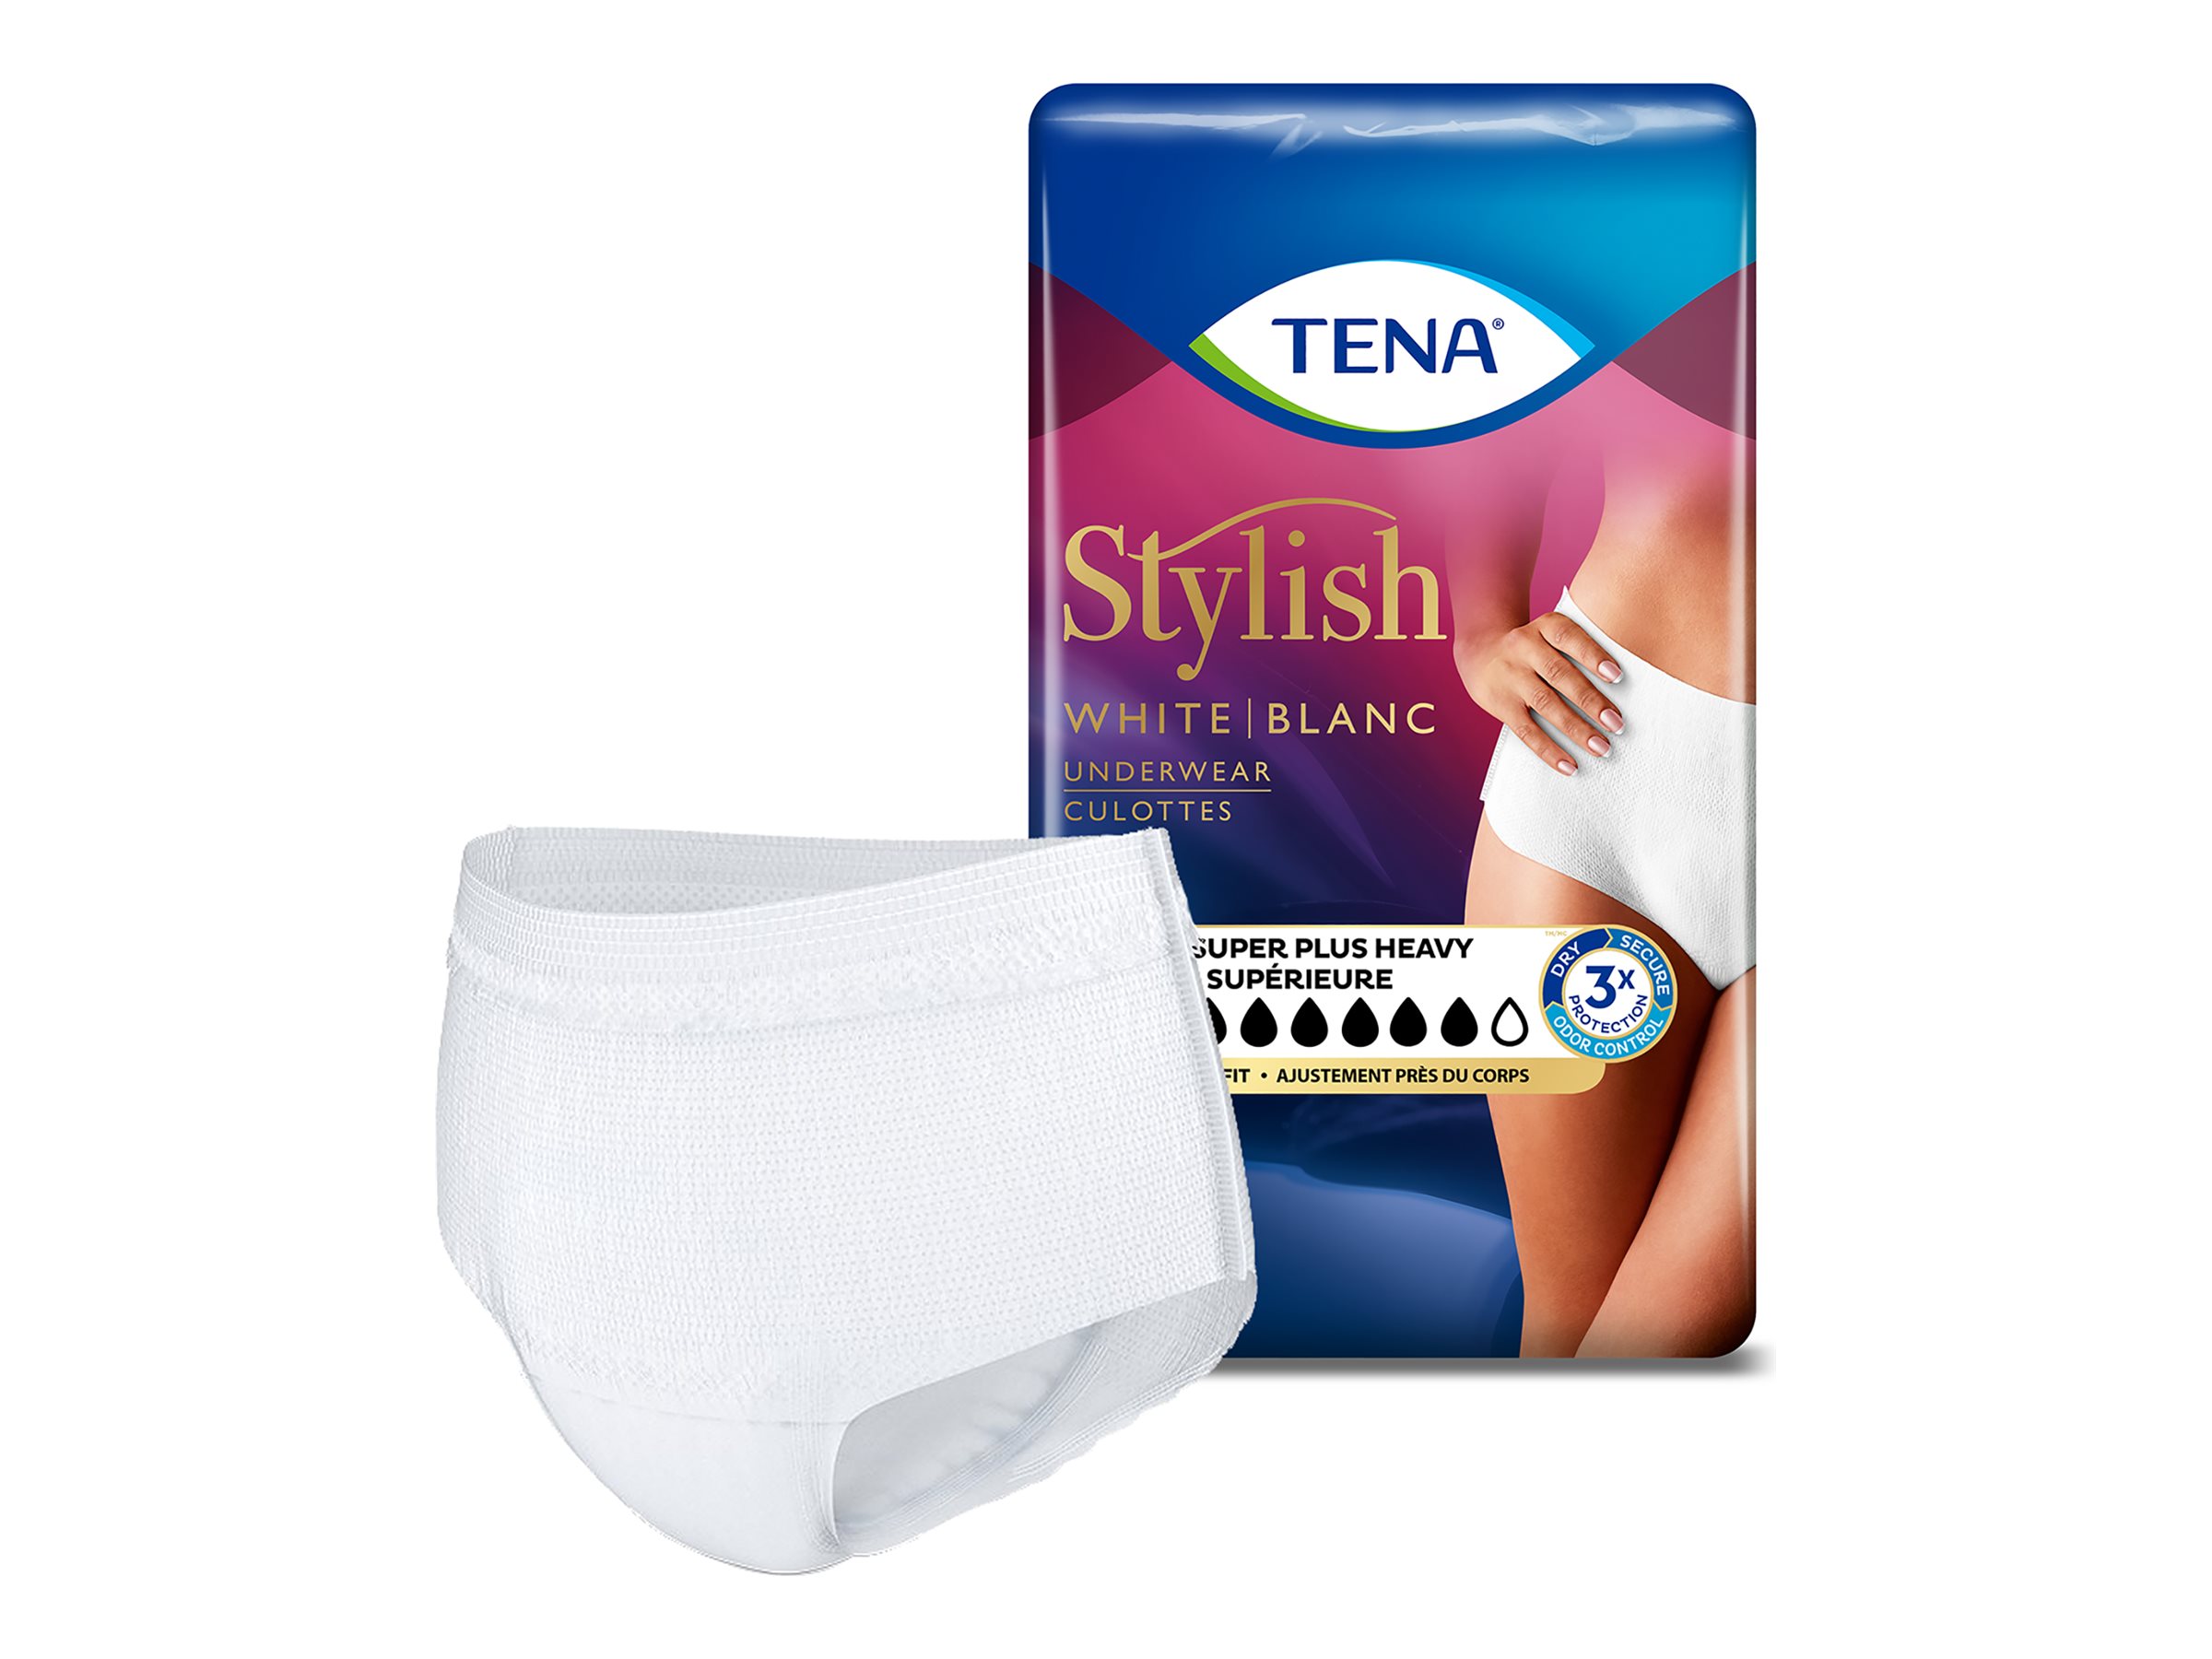 Tena Stylish Black Underwear Women Adult Diapers Size L Maximum 15